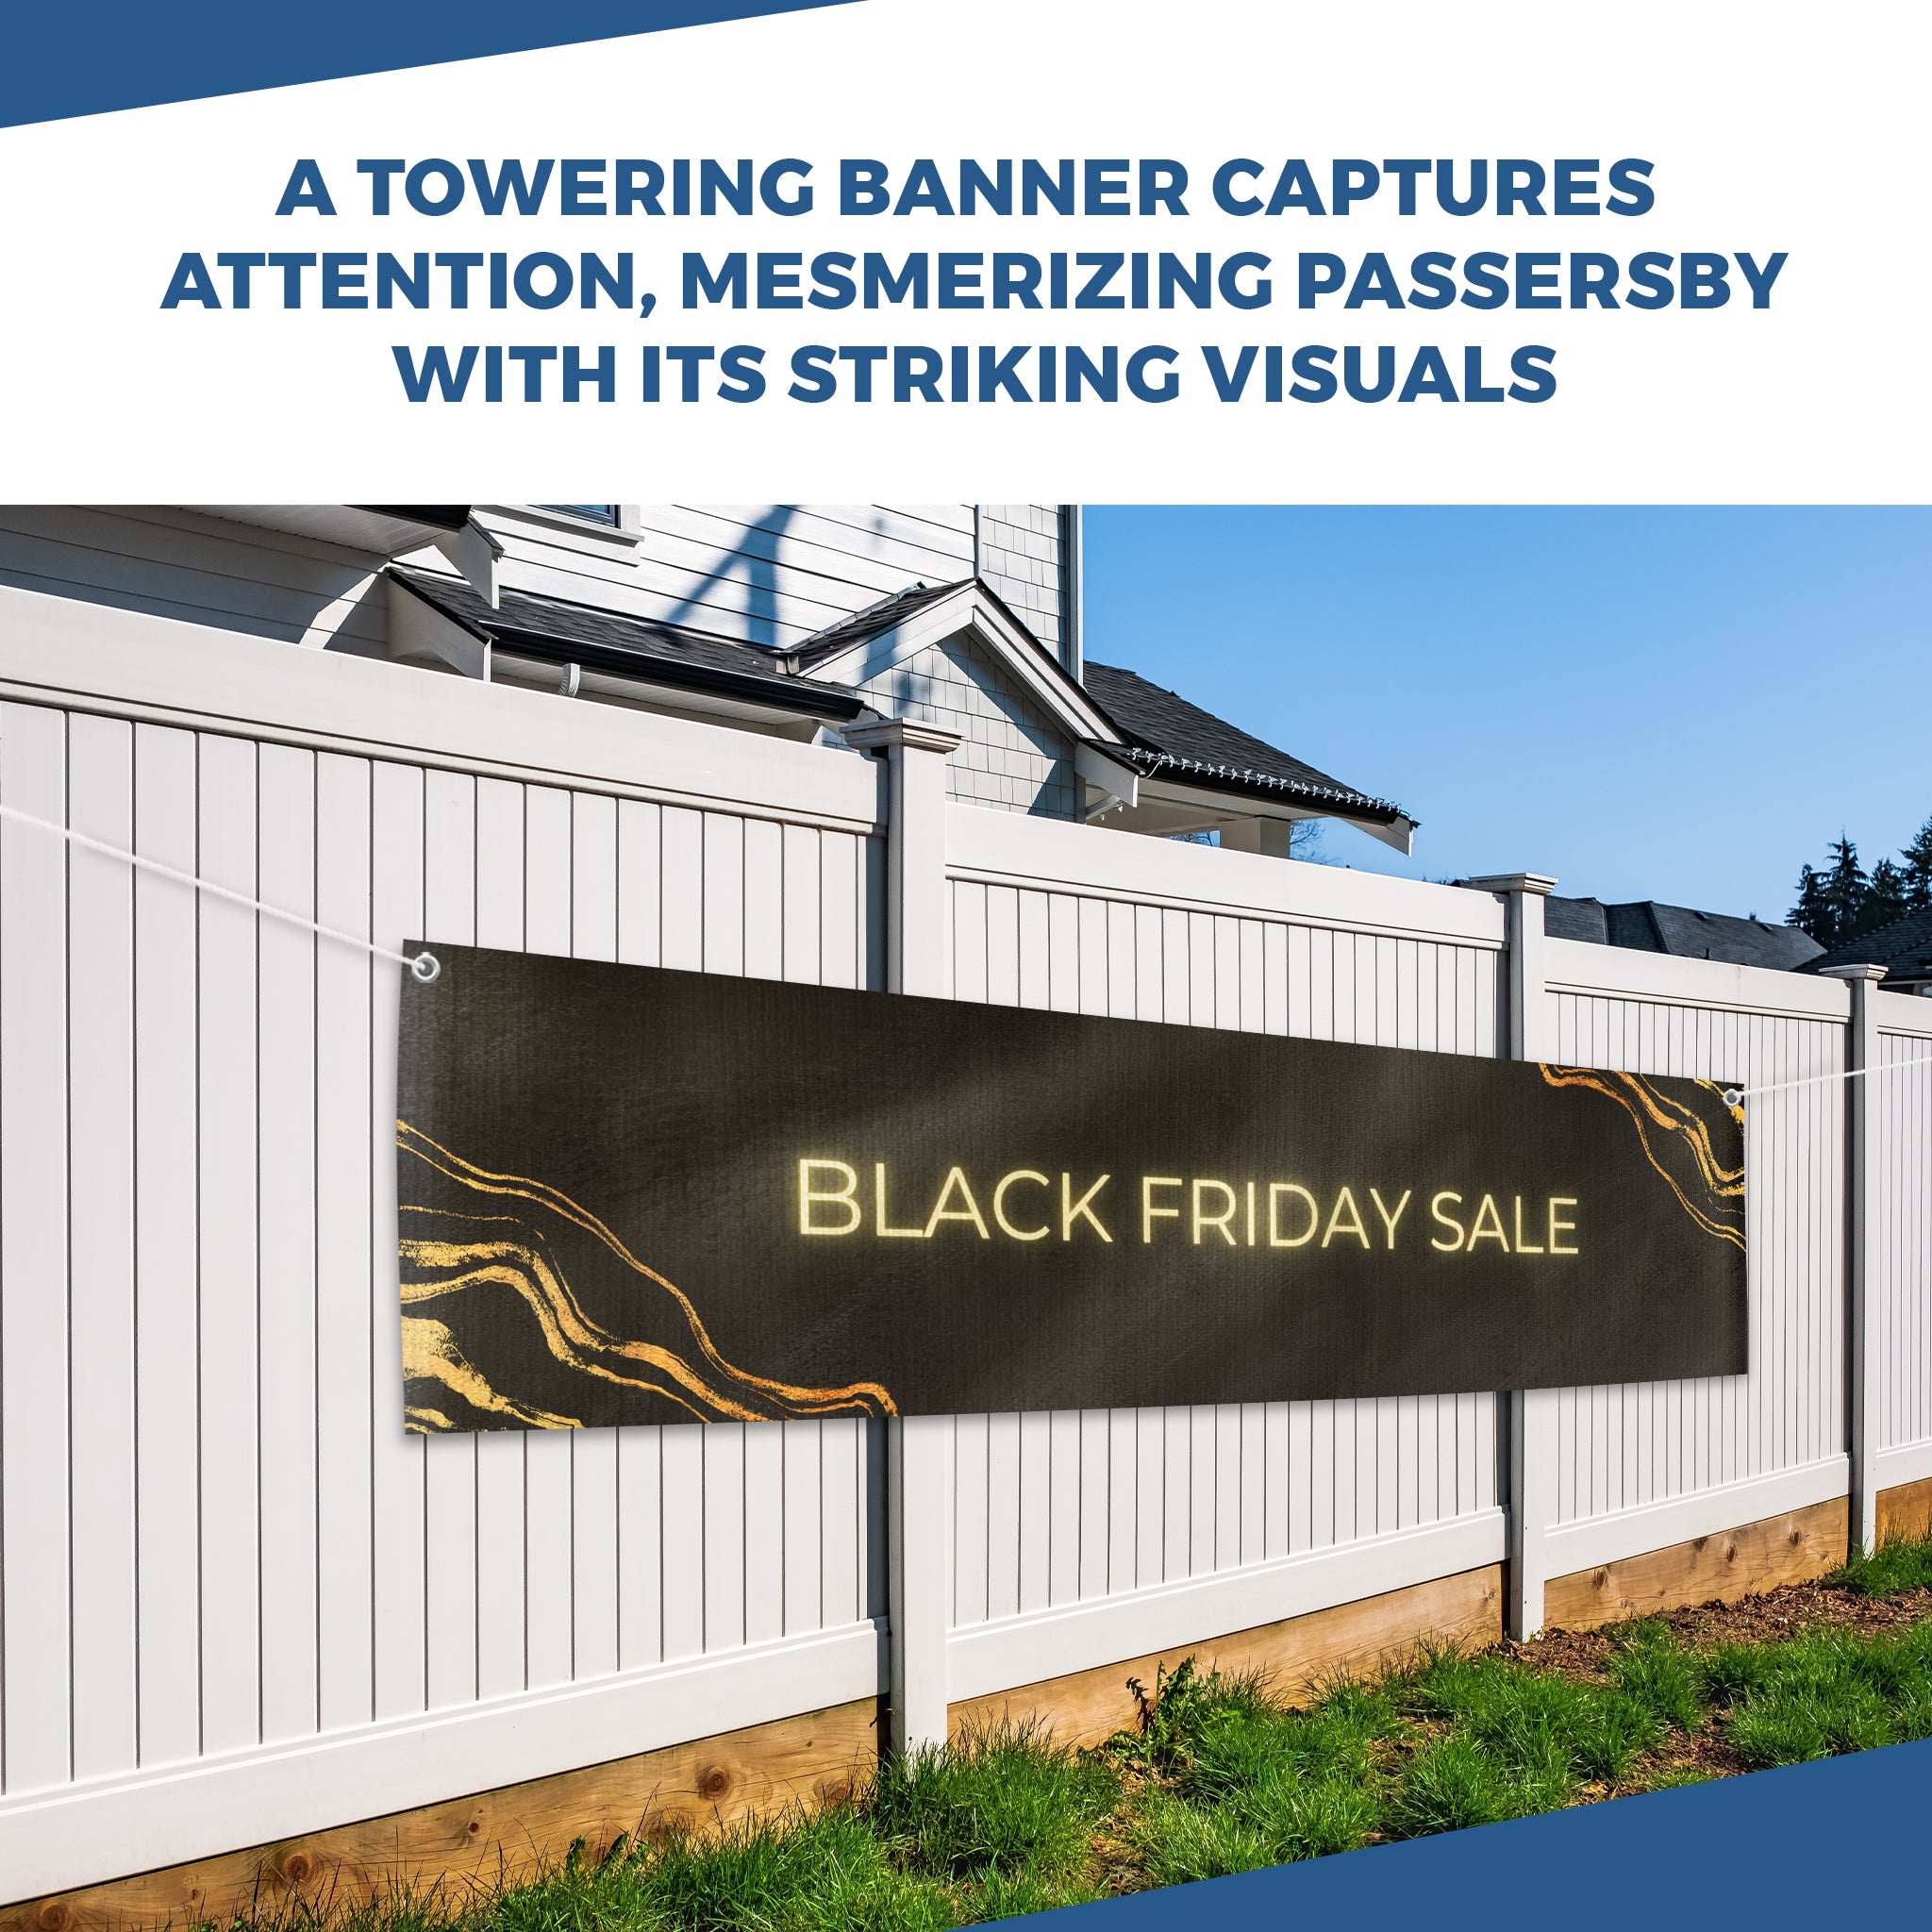 Black Friday Sale Large Banner